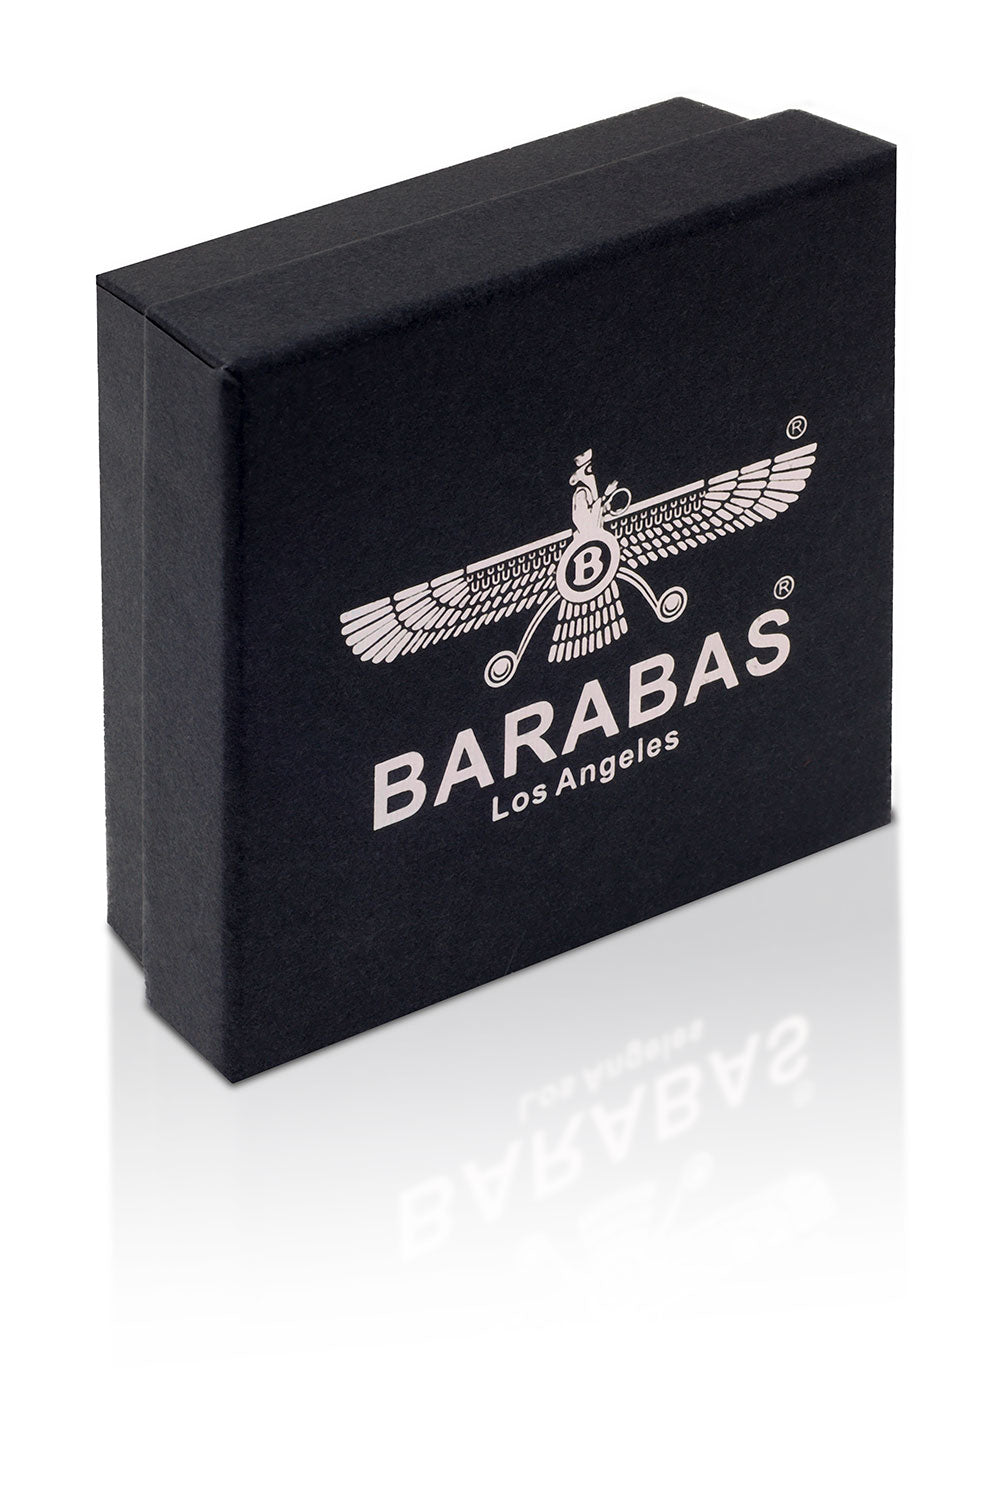 Barabas Unisex Natural Gemstones Obsidian Bangle Bracelets 4BB04 Black